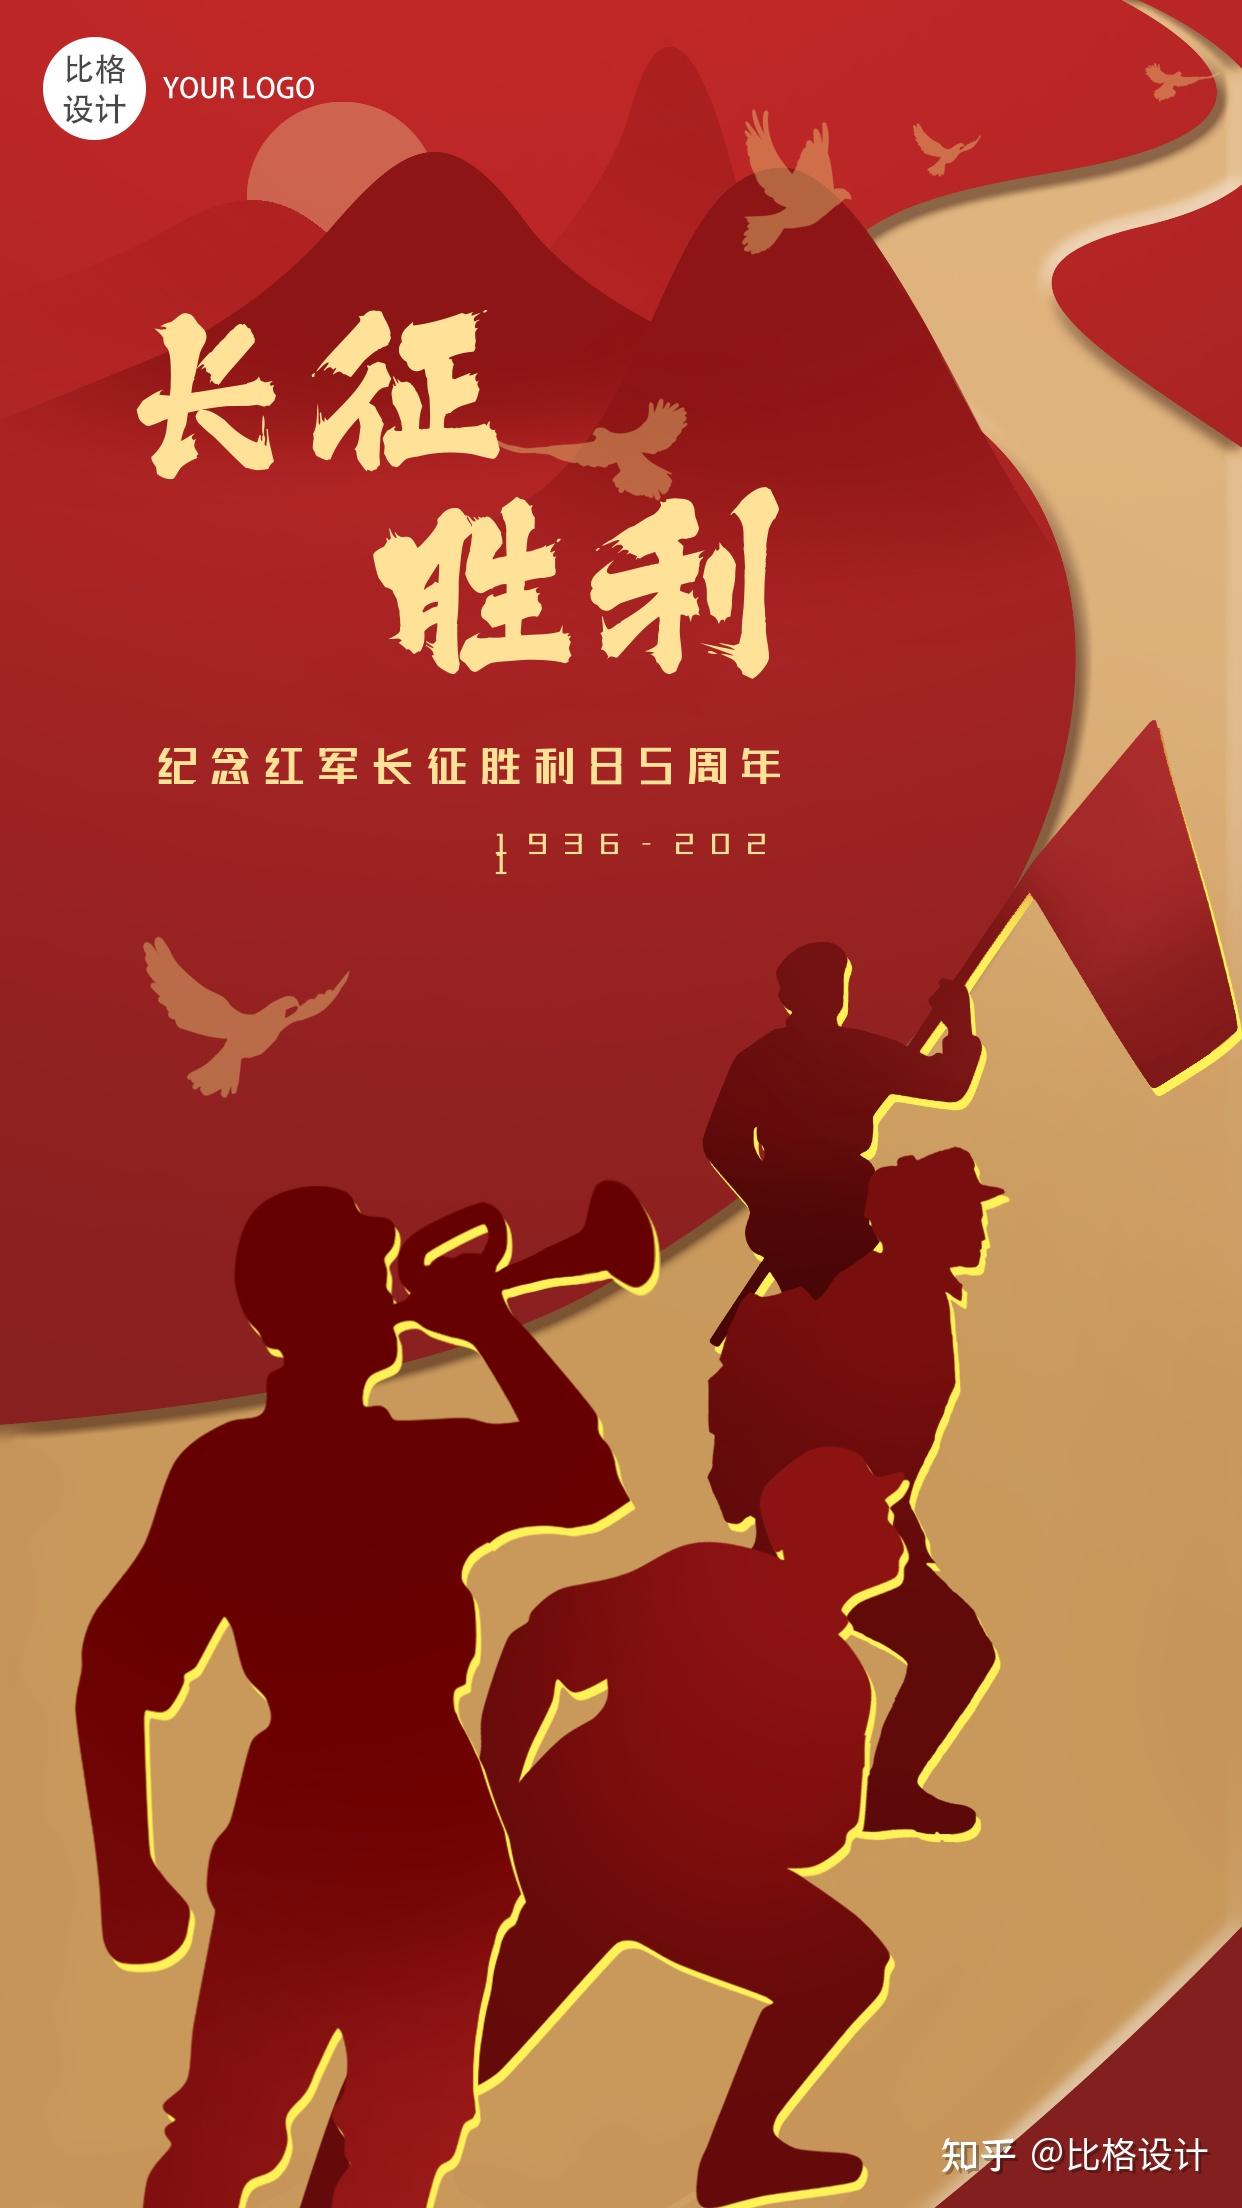 纪念红军长征胜利85周年封面首图好了,以上就是分享的所有关于"长征